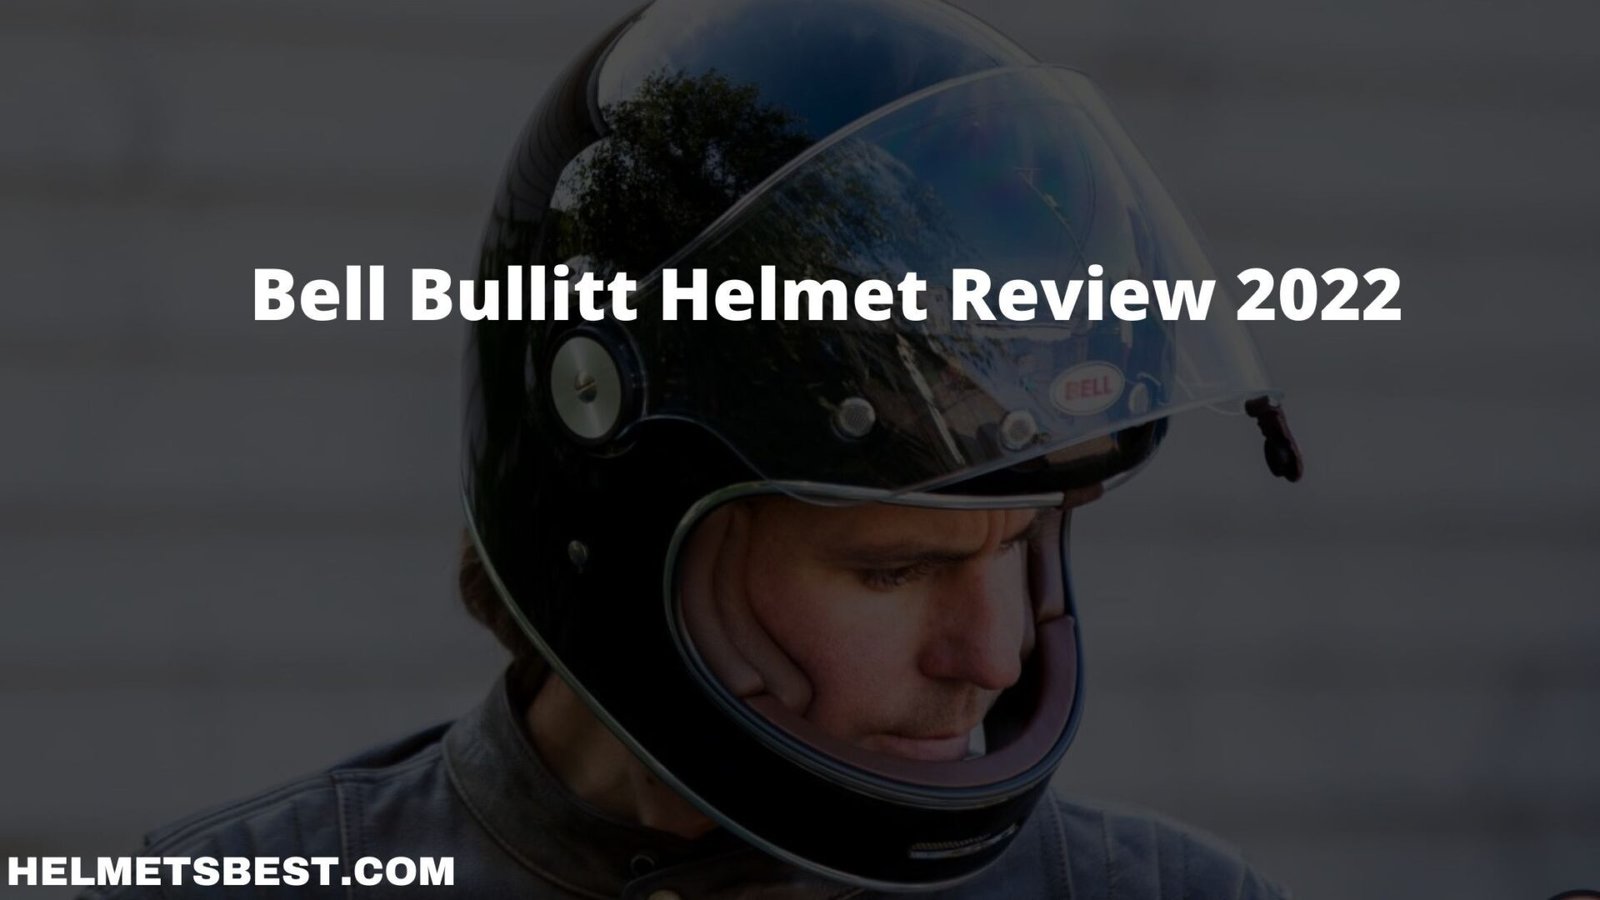 Bell Bullitt Helmet Review 2022